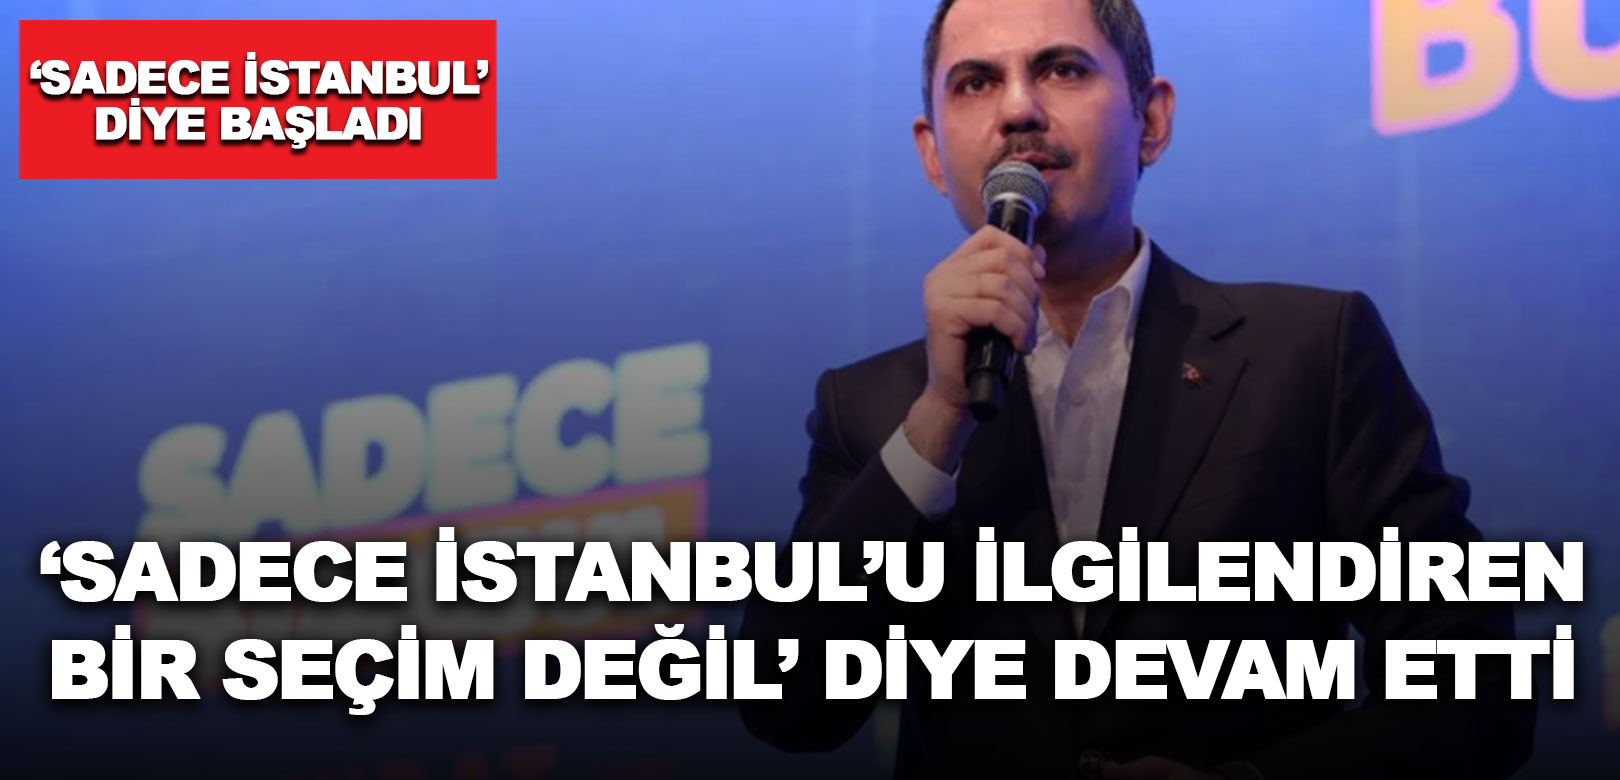 Murat Kurum, 'sadece İstanbul' diye başladı, 'sadece İstanbul'u ilgilendiren bir seçim değil' diye devam etti